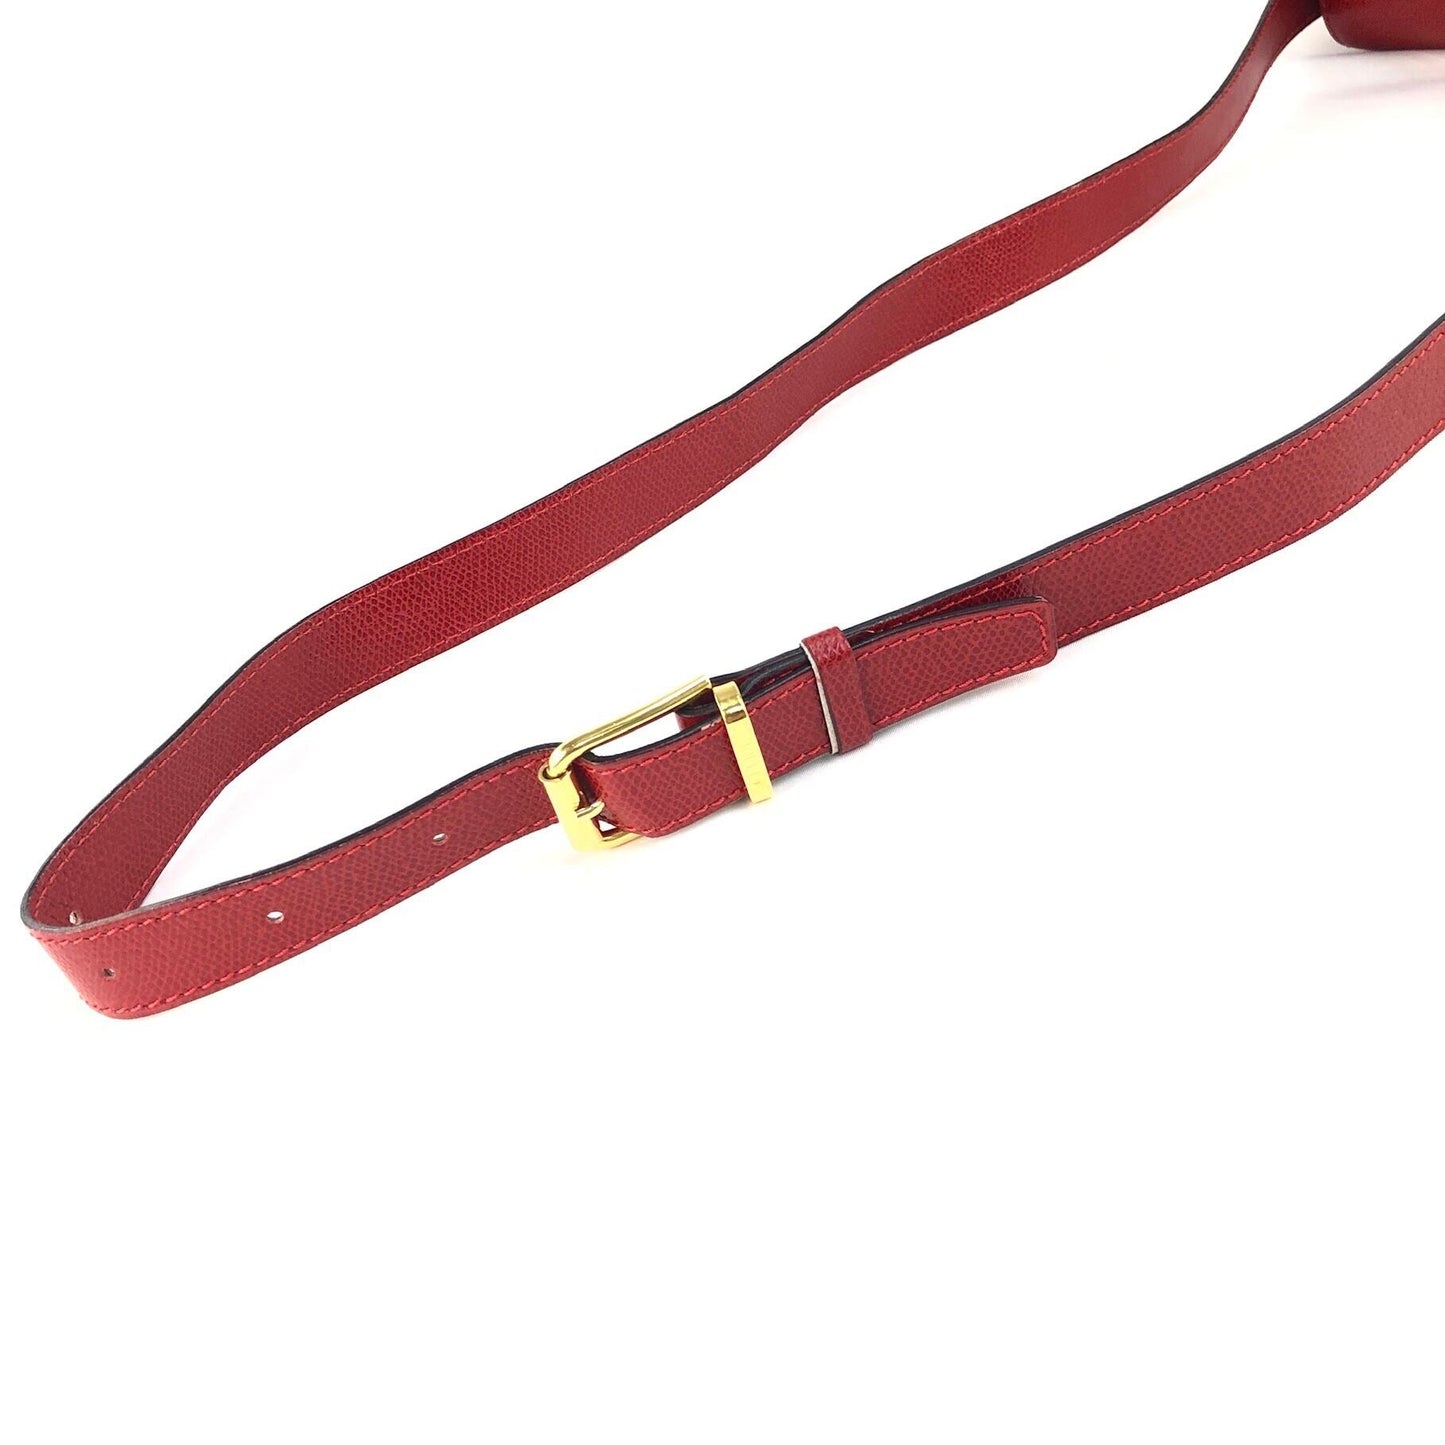 CELINE Turn Lock Leather Shoulder Bag Red vintage Old Celine 5pz5wi